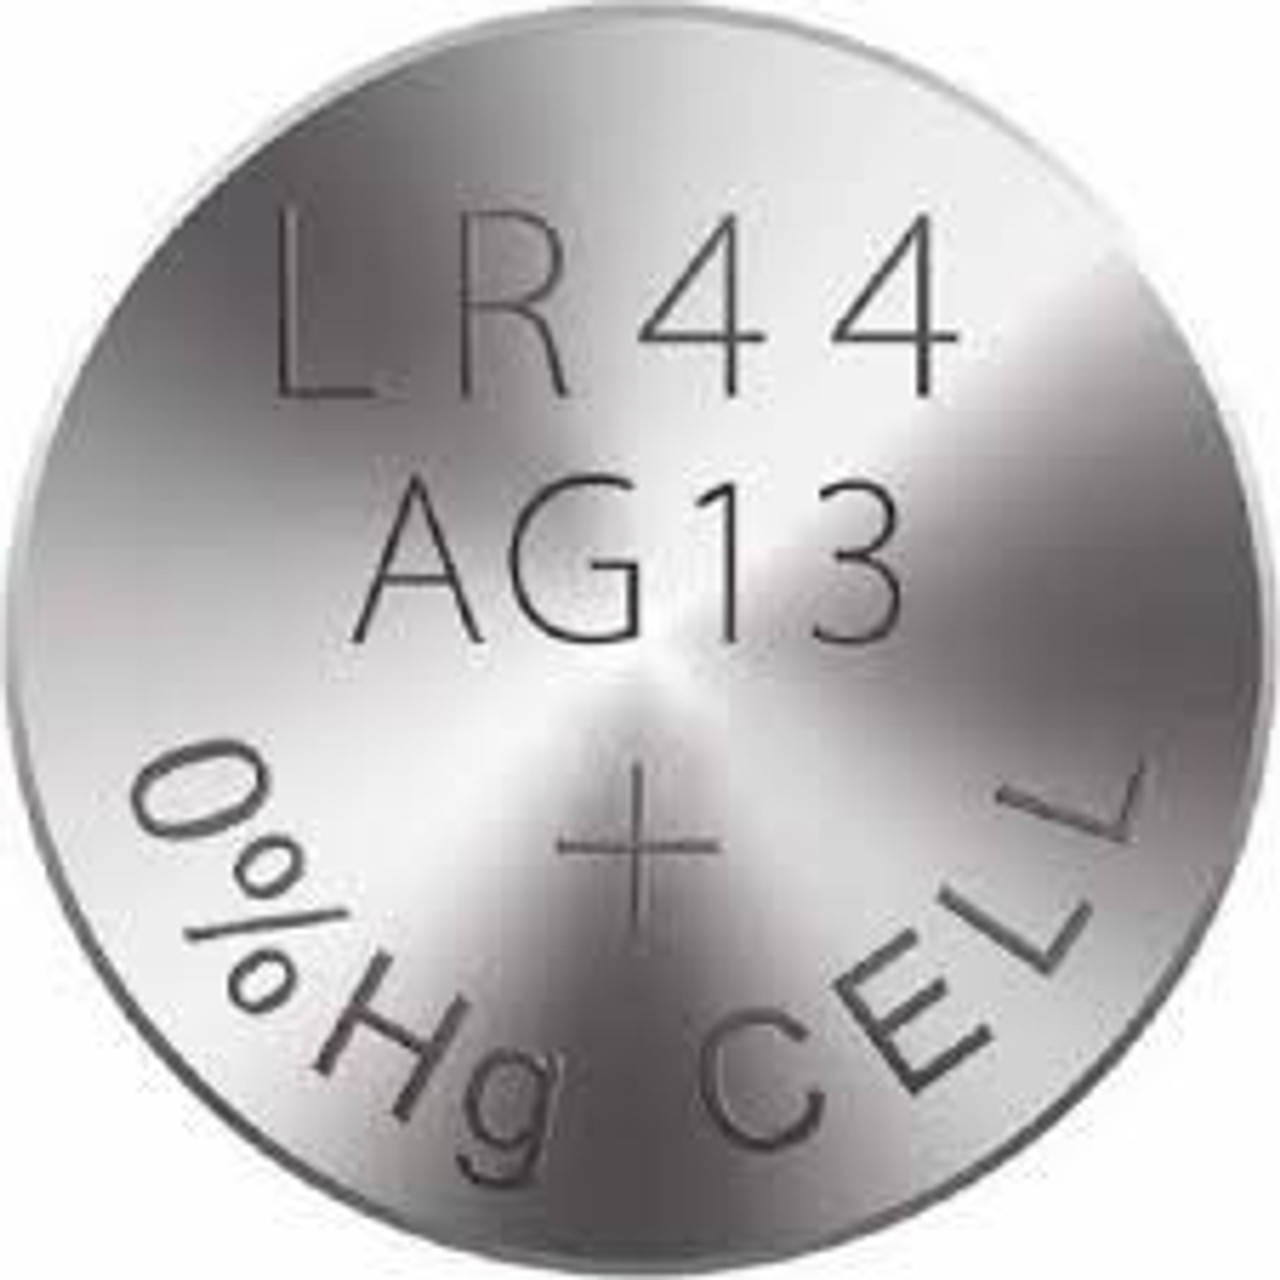  AG13 / LR44 Alkaline Button Watch